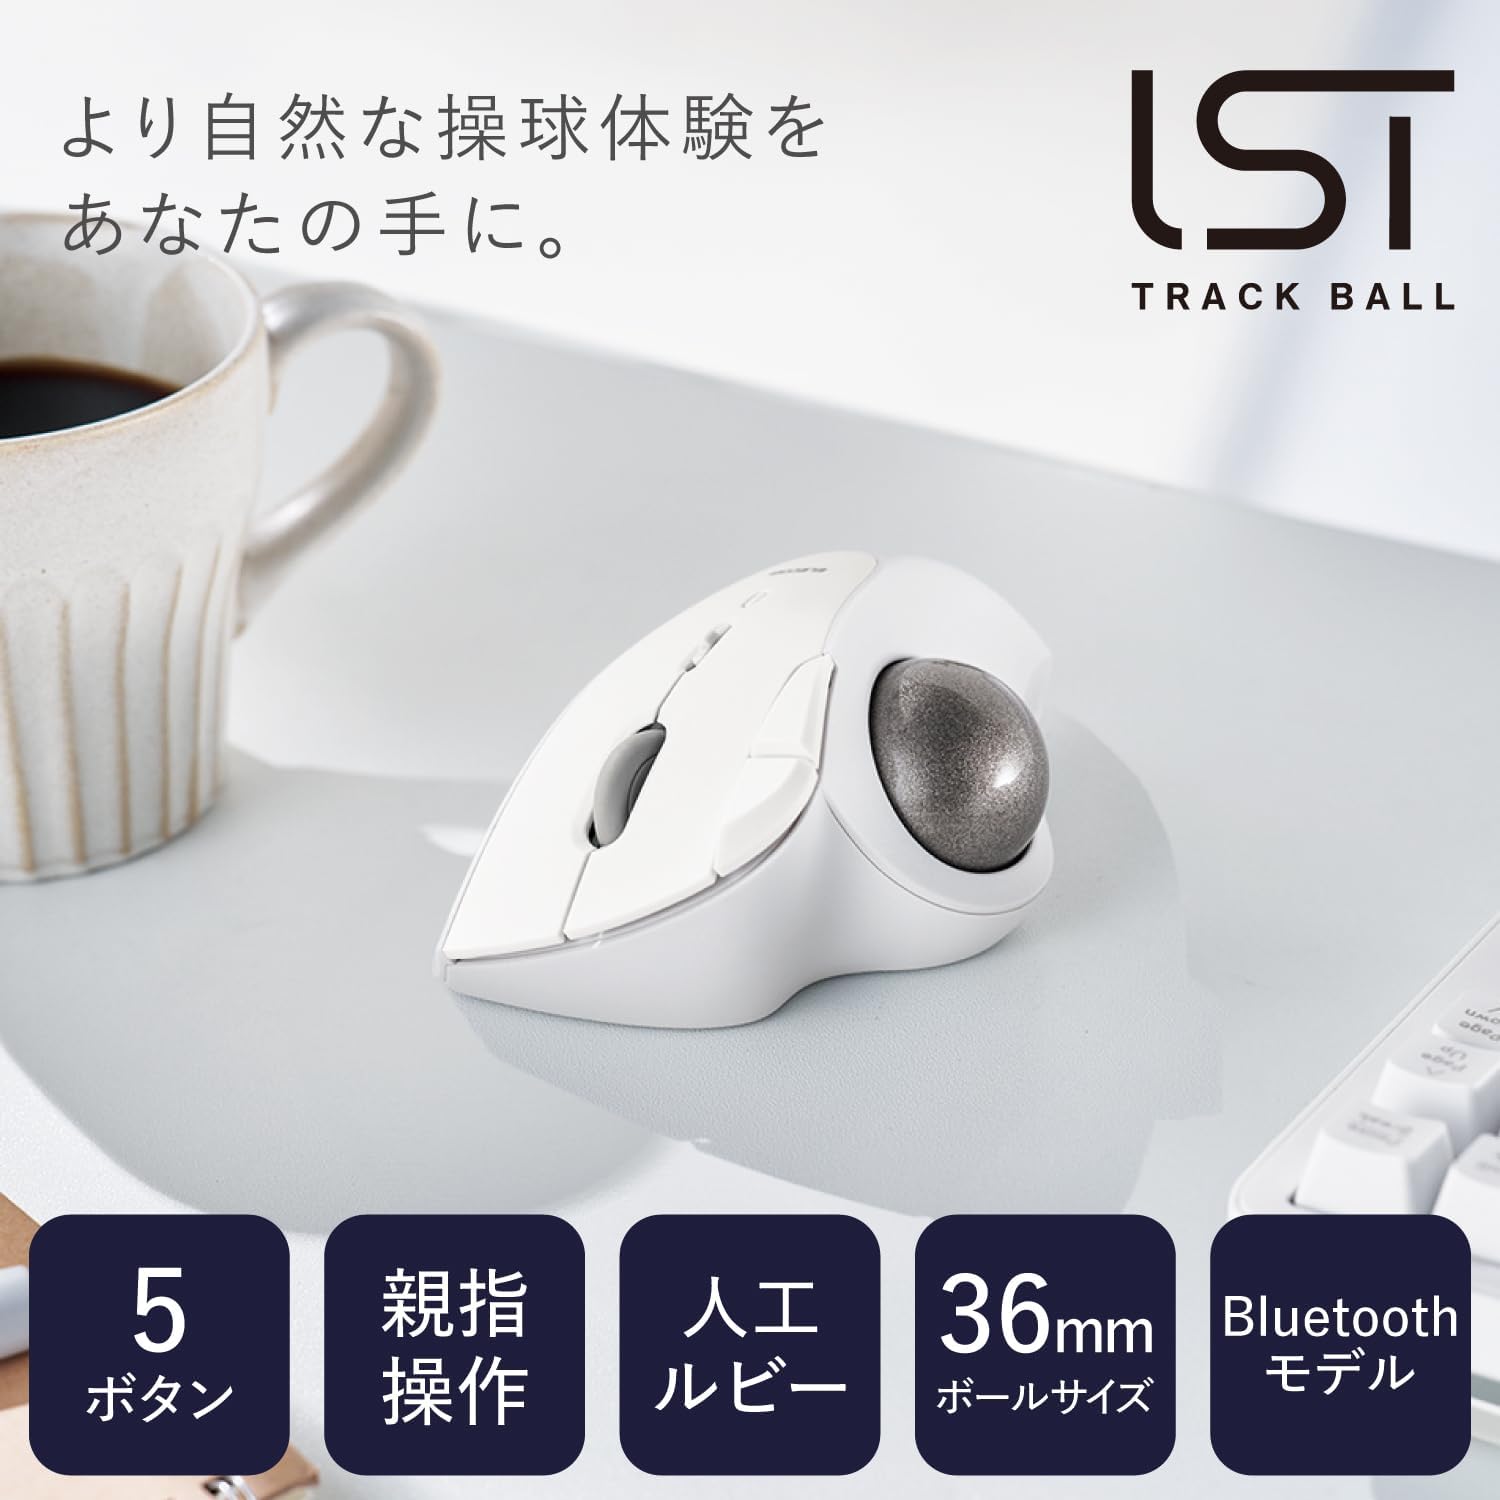 2色新款 日本公司貨 ELECOM M-IT10BR 拇指 軌跡球 滑鼠 5鍵 Bluetooth5.0